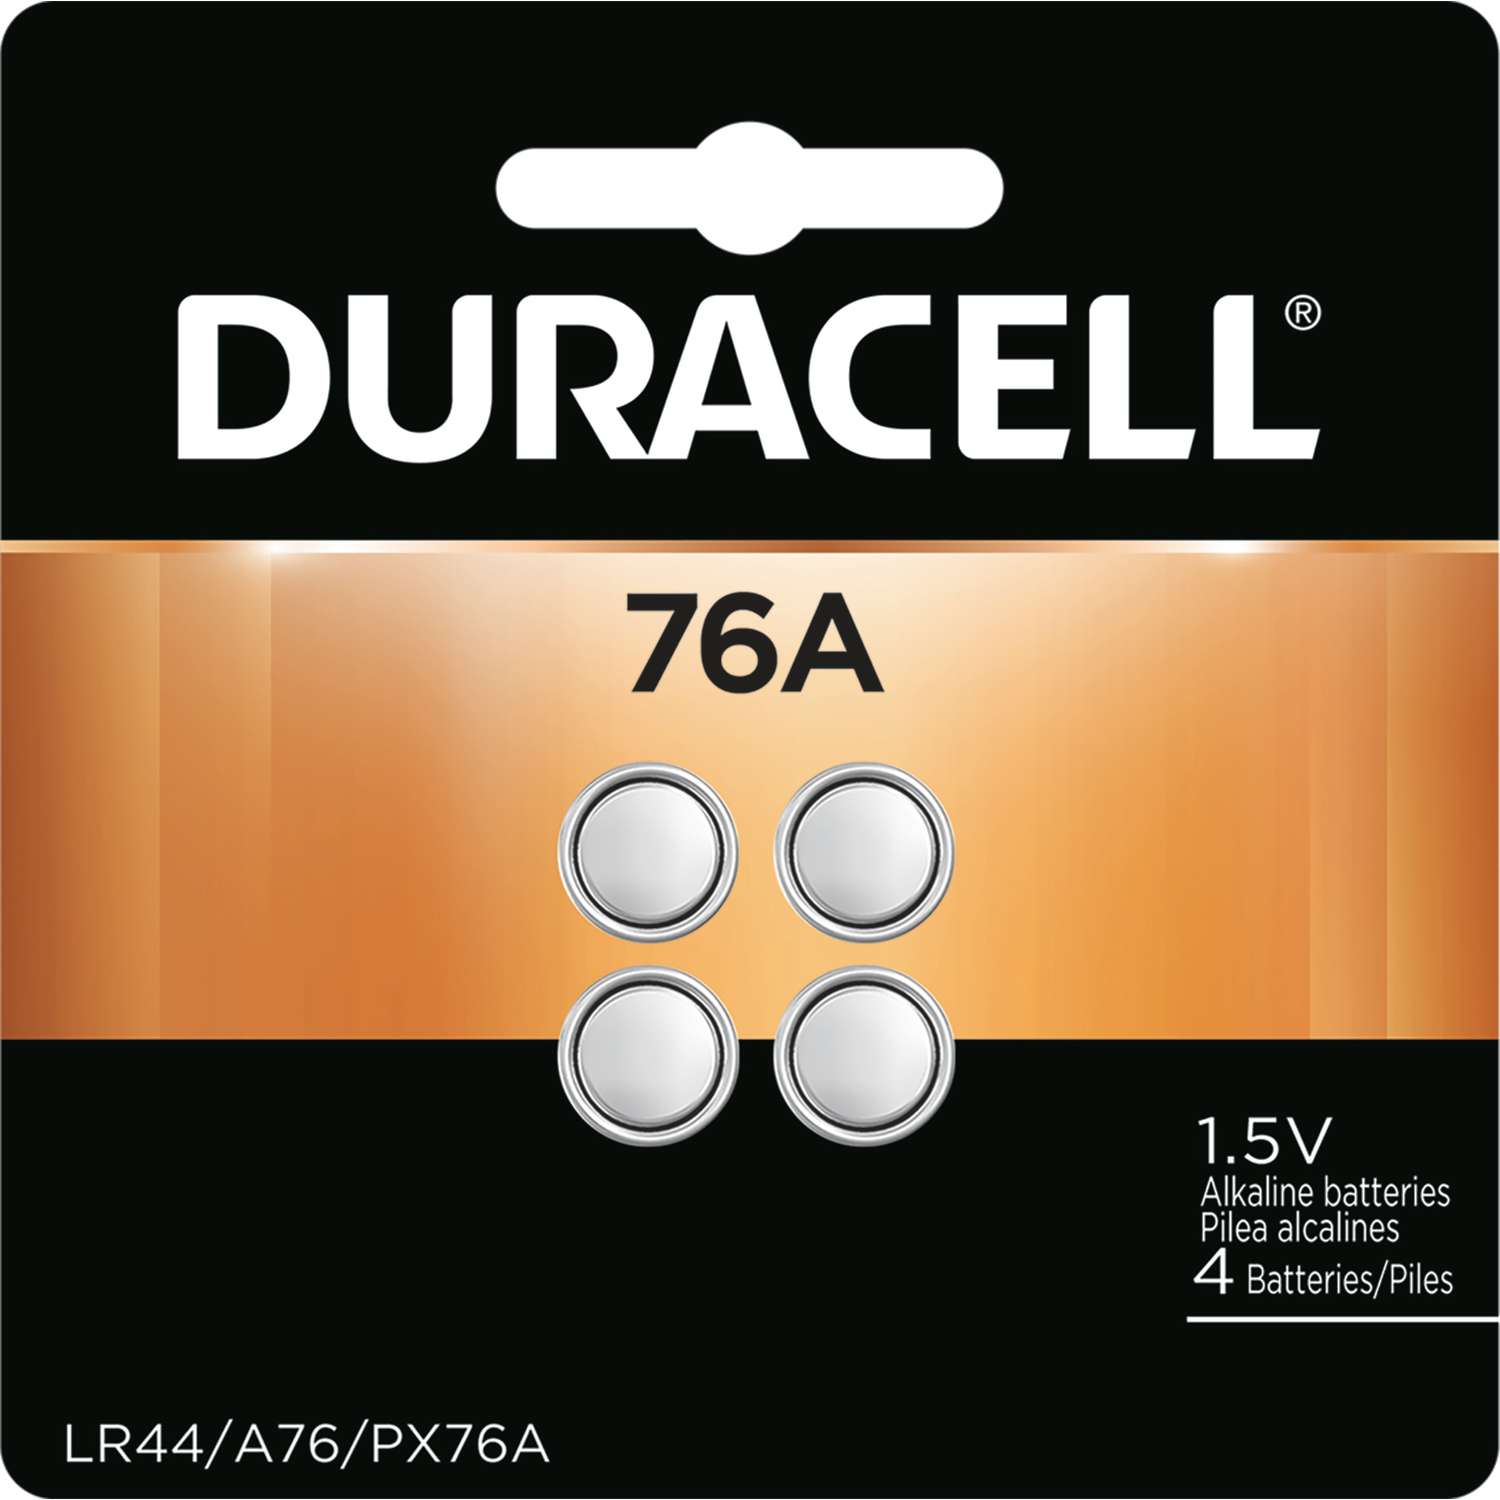 Duracell Alkaline 76a Lr44 1 5 V Medical Battery 4 Pk Ace Hardware